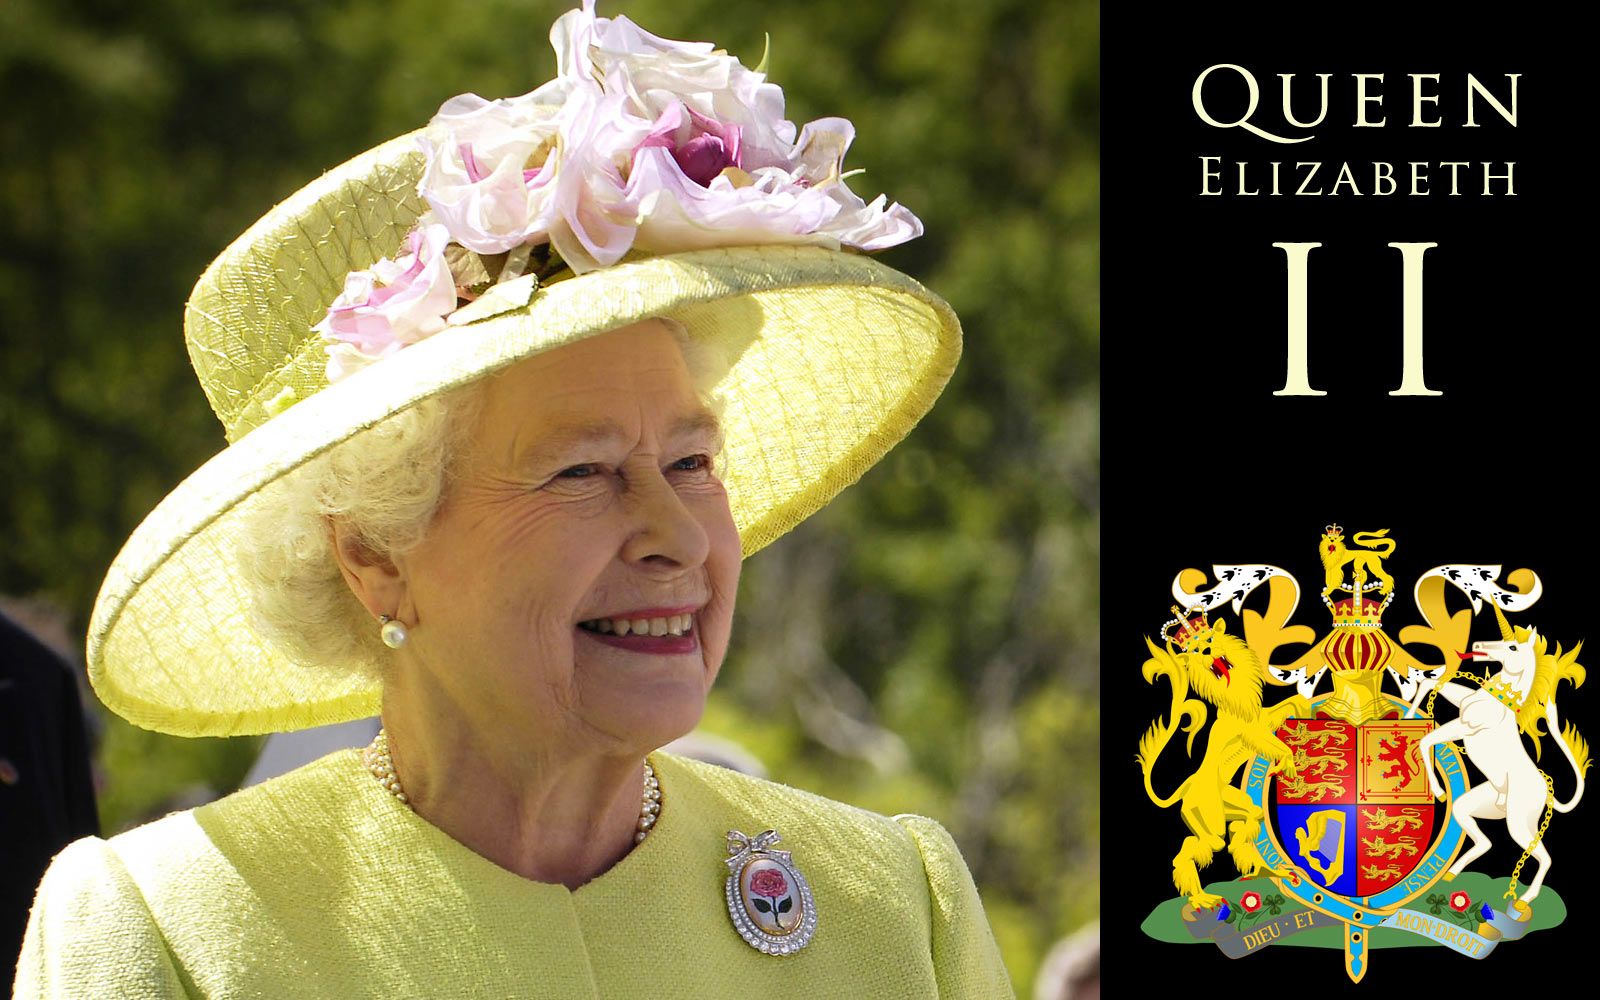 تصویر نزدیک از ملکه الیزابت انگلیس با لبخند مشهور 